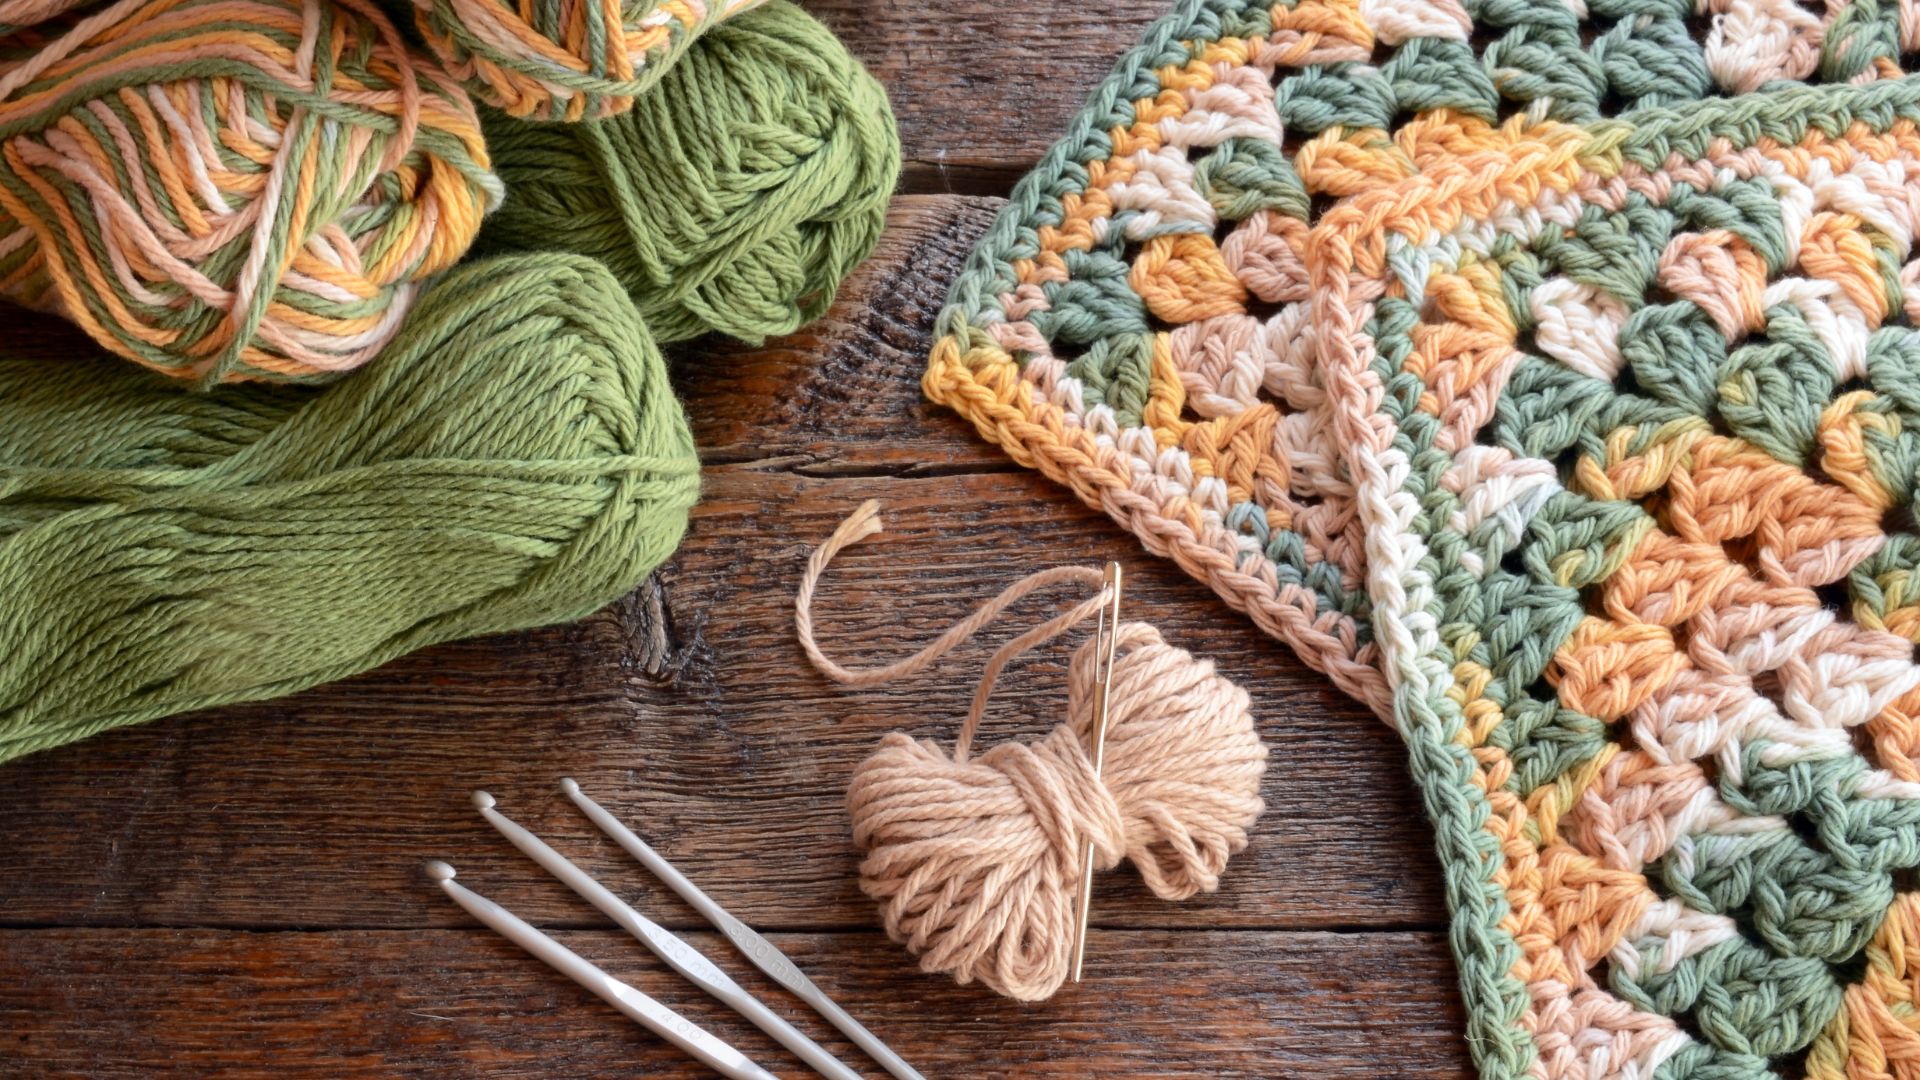 Yarn, crochet hooks, and crochet project